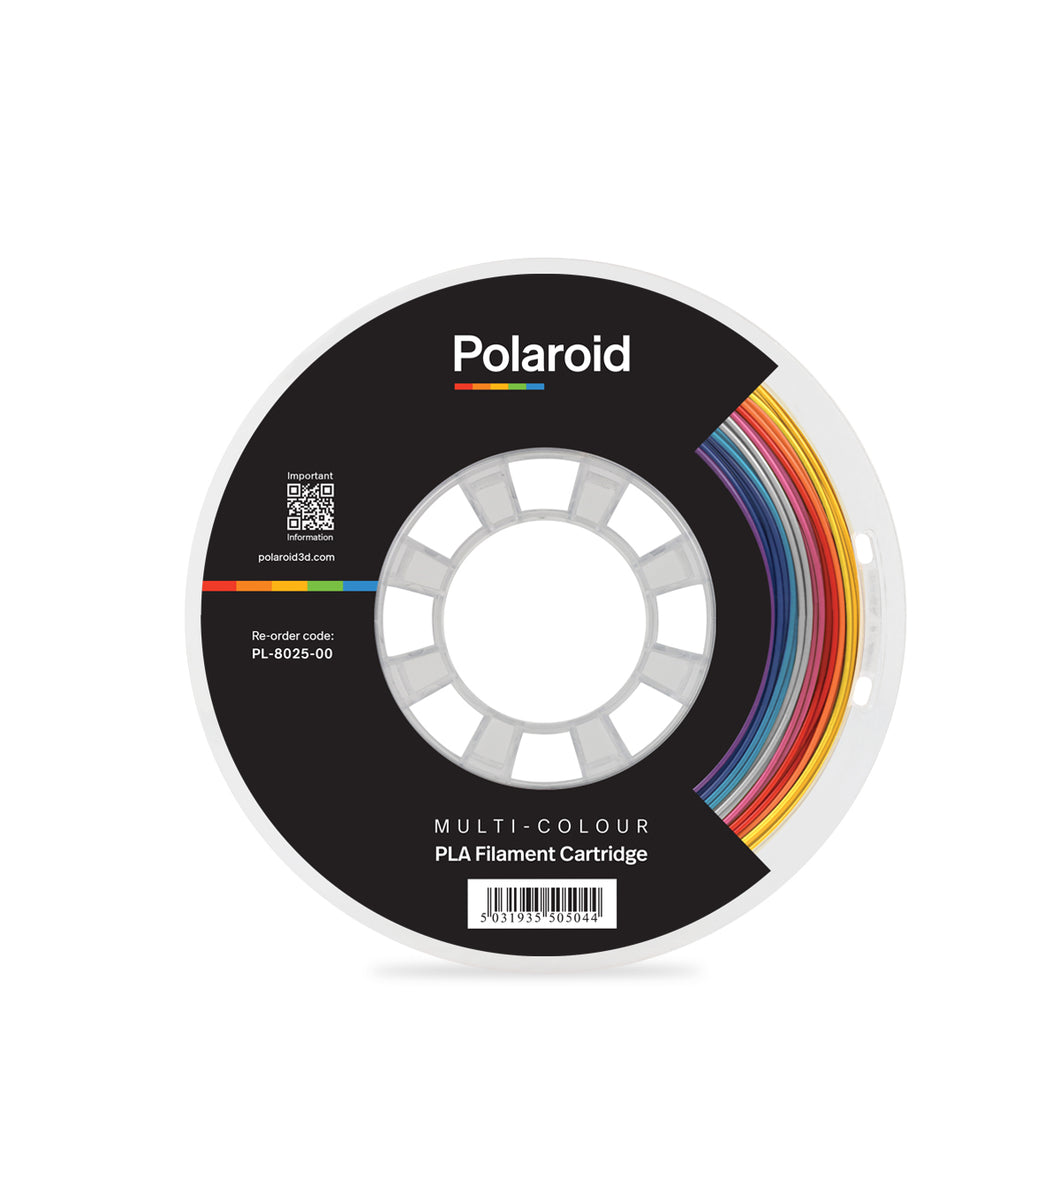 Polaroid 3D 500g Materiale filamento PLA universale premium multicolore